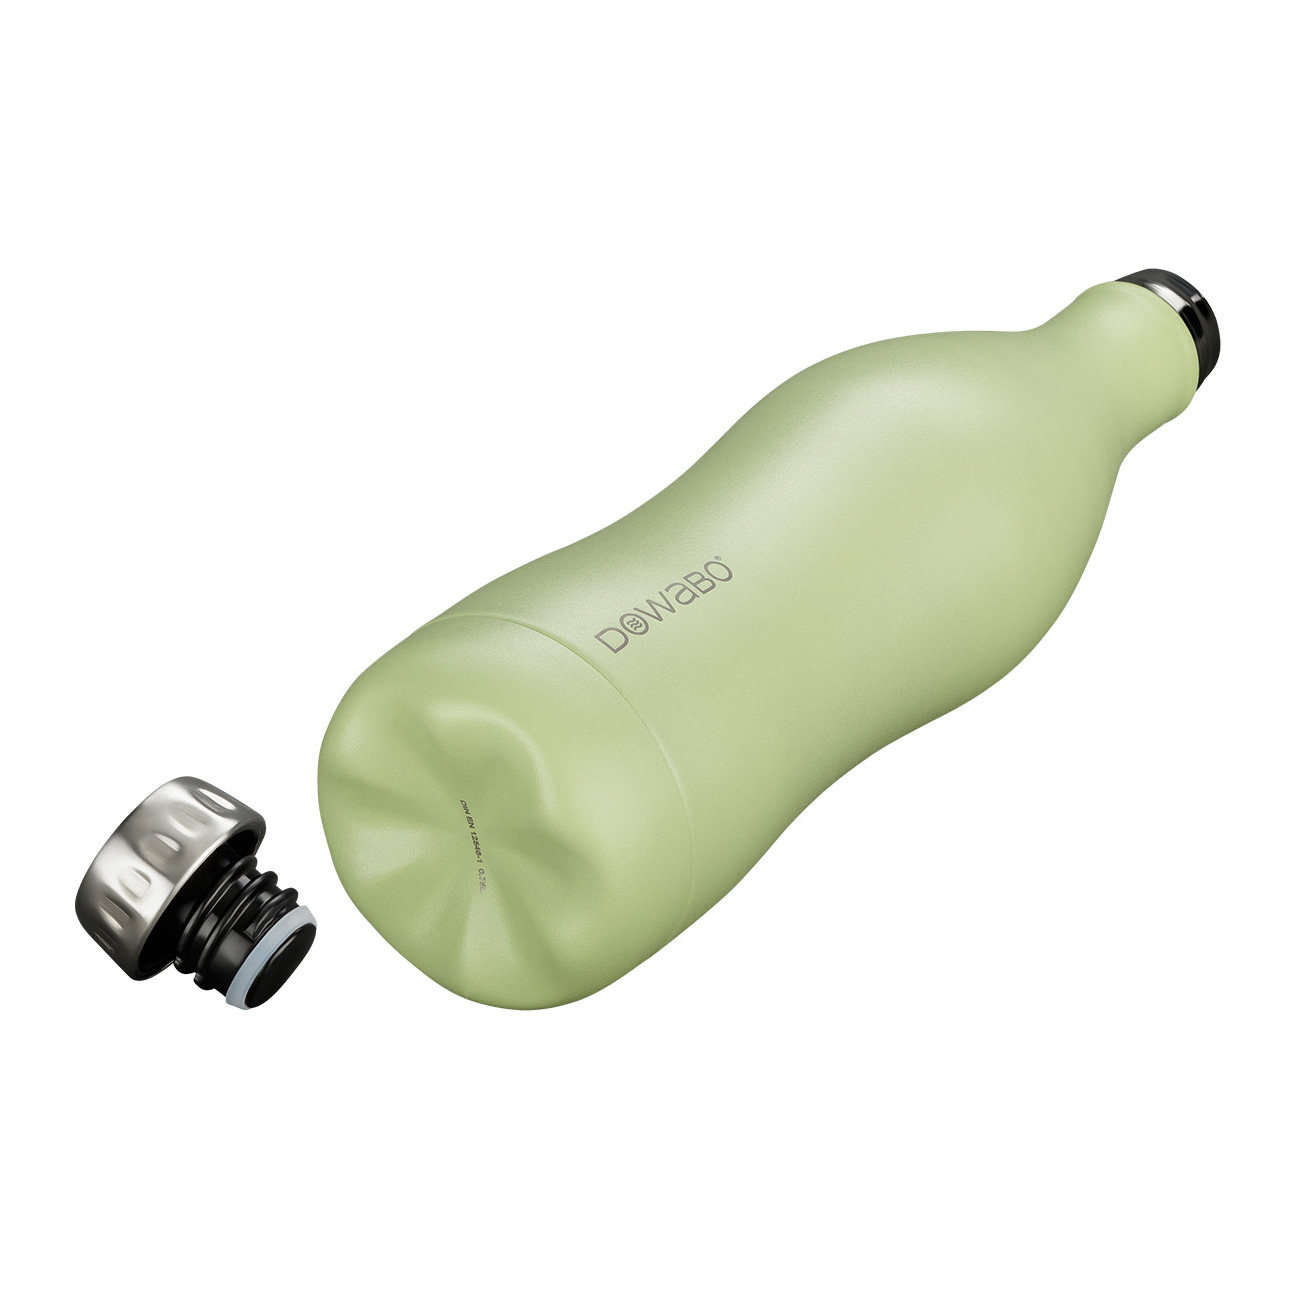 Dowabo Isolierflasche kohlensäuredicht 0,5 Liter hellgrün matt Bild 1